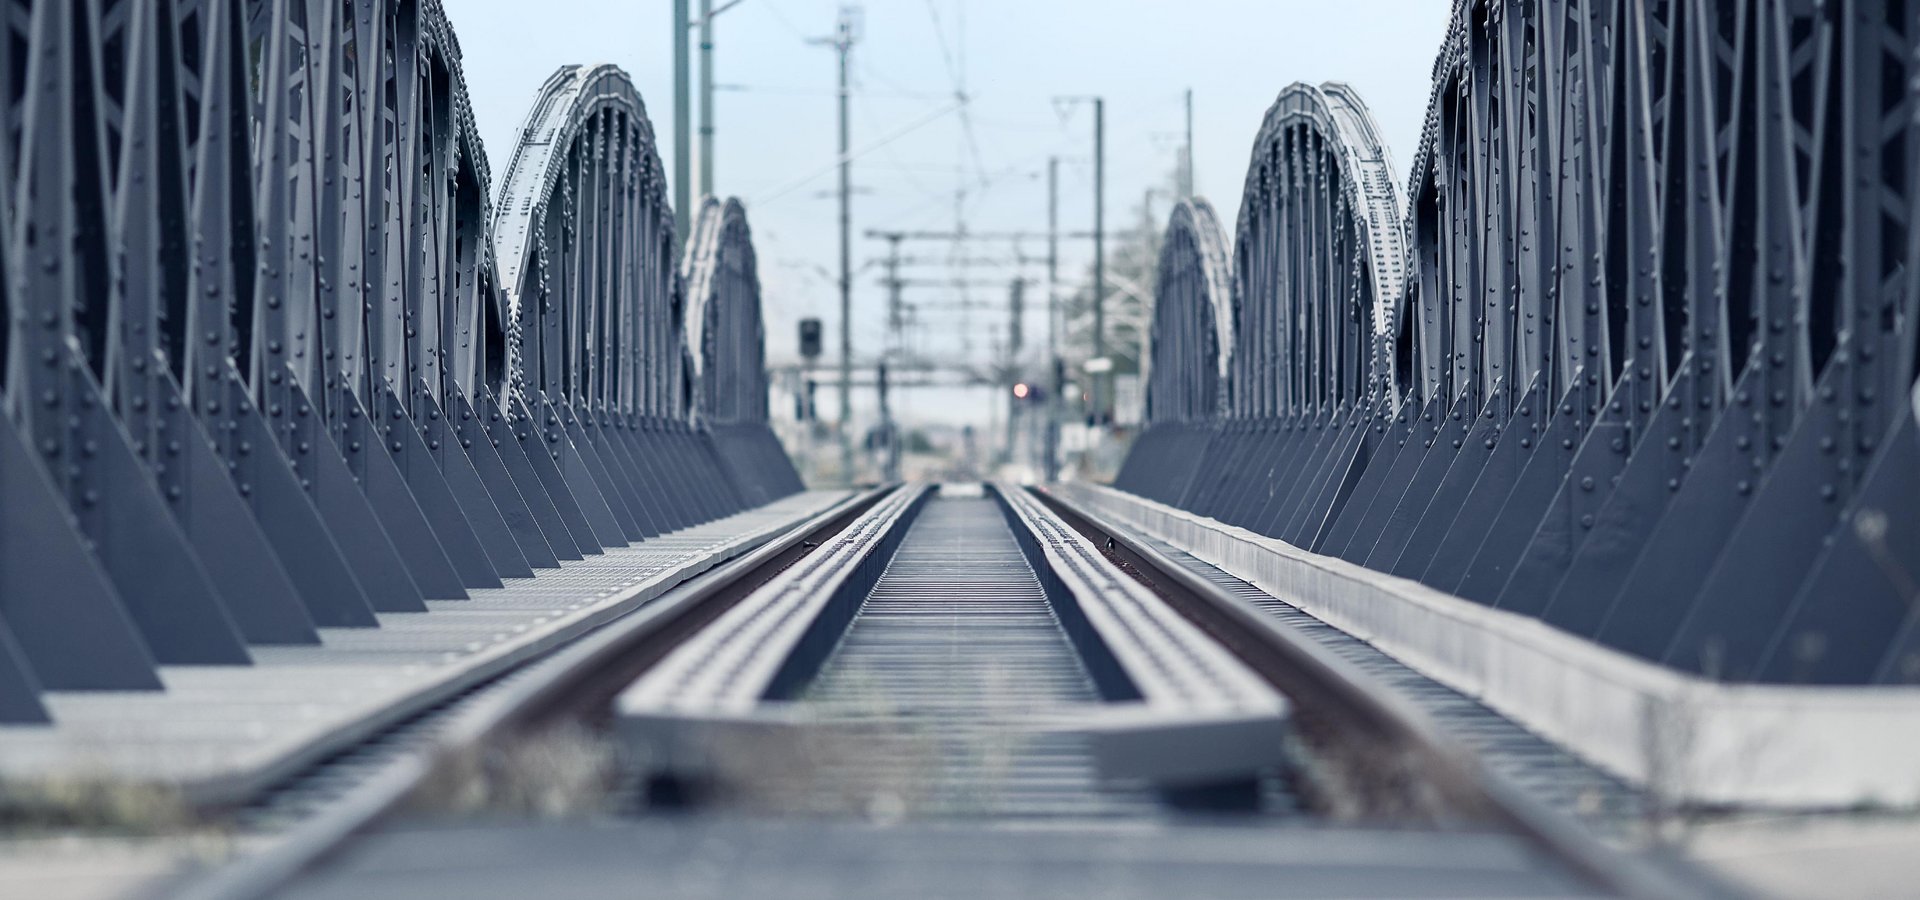 Eisenbahnbrücke in Fluchtperspektive